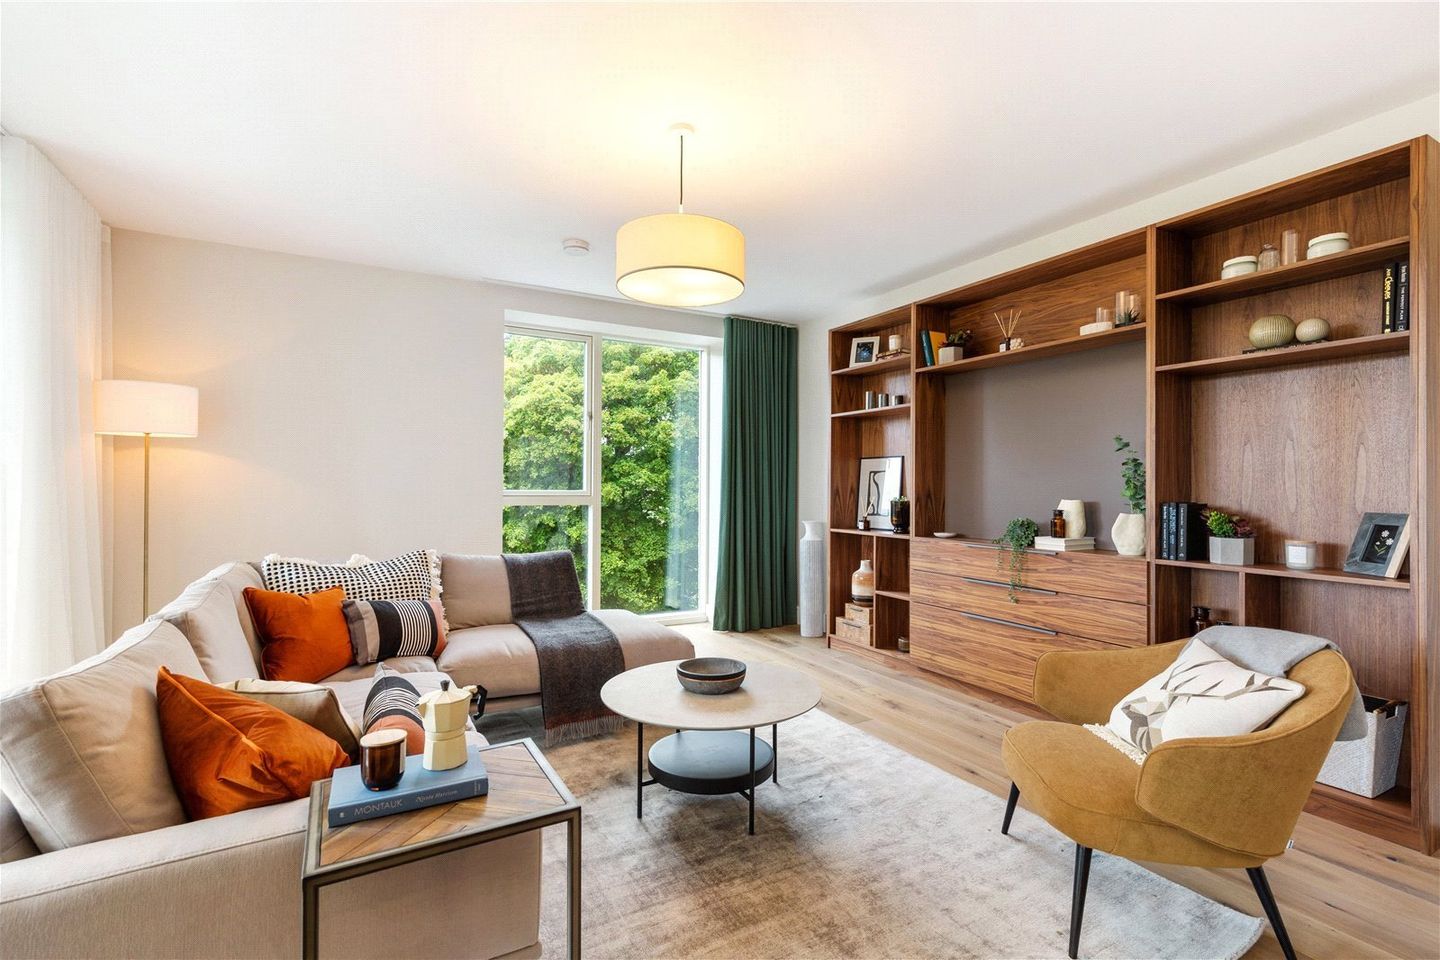 3 Bedroom Apartment, Brennanstown Wood, Brennanstown Wood, Brennanstown Wood, Dublin 18